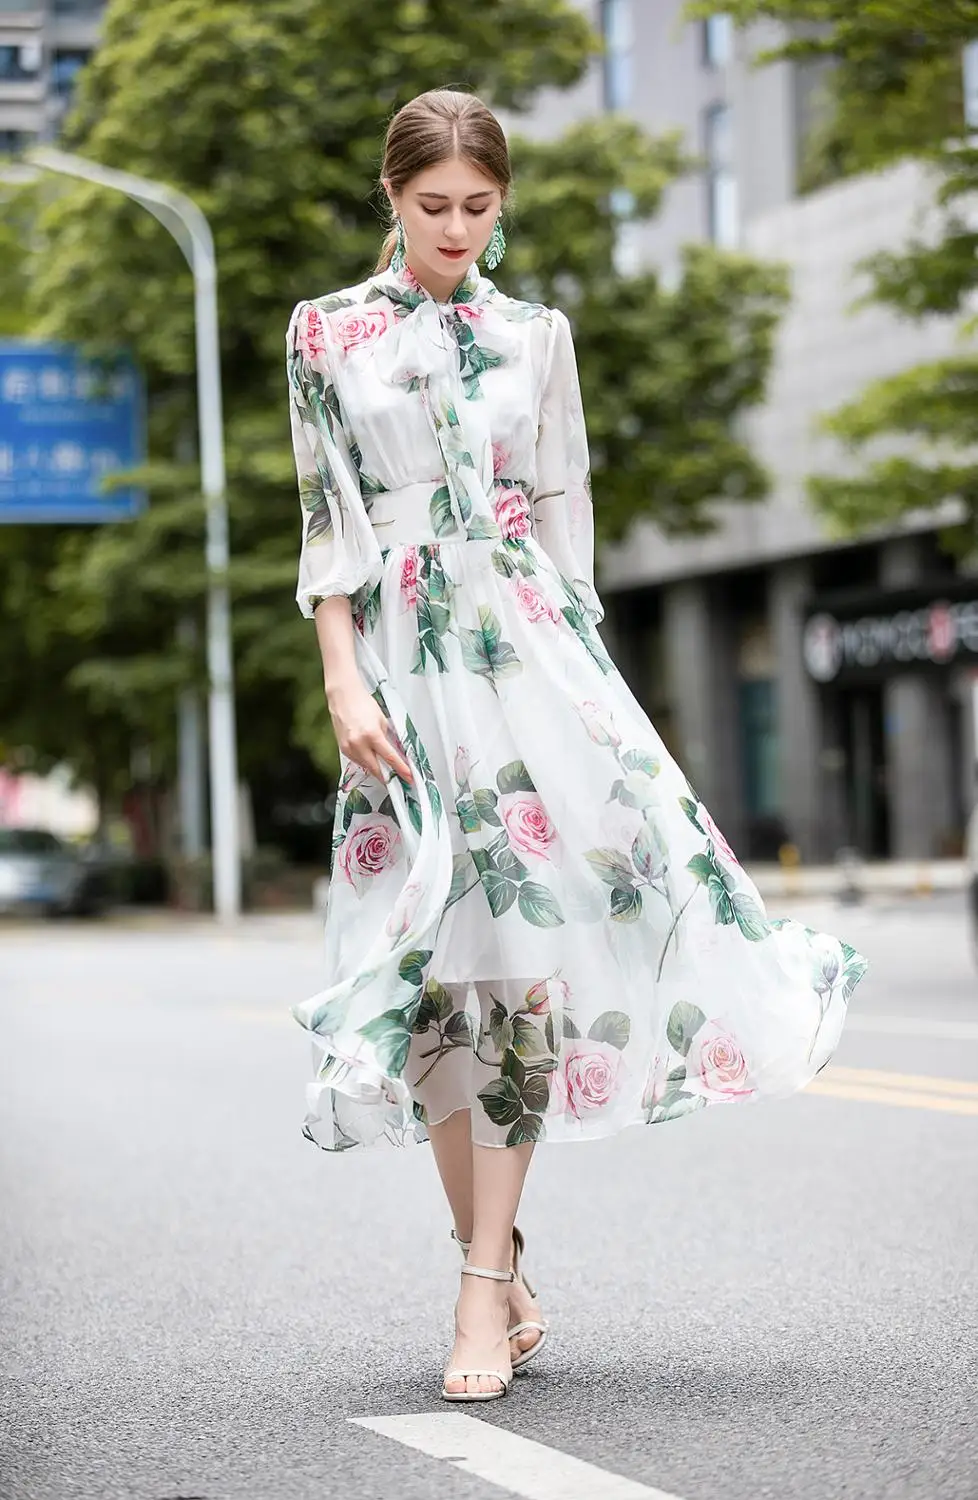 Designer Charming Holiday Dresses Women's Lantern Sleeve Rose Flower Printed Festa Vestidos Noble Midi Robe